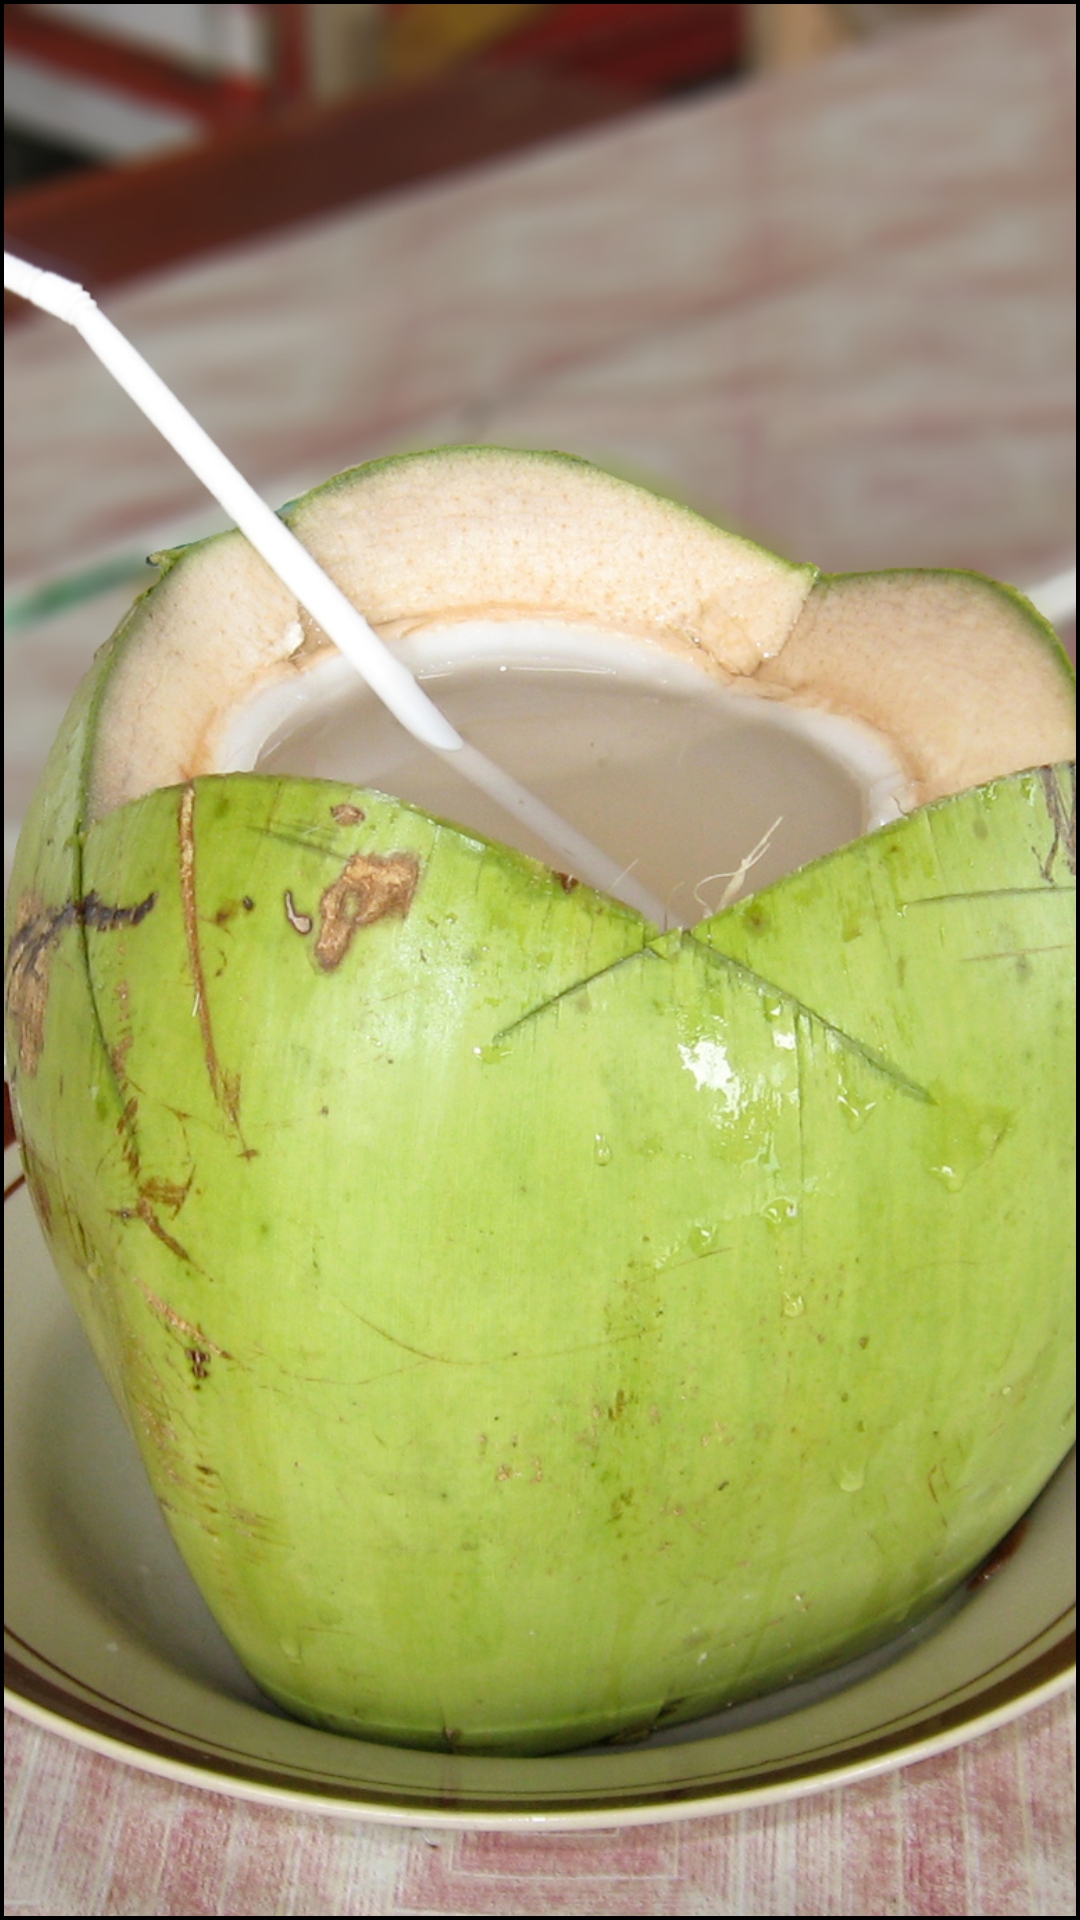 नारियल पानी पीने के कितनी देर बाद खाना खाना चाहिए?